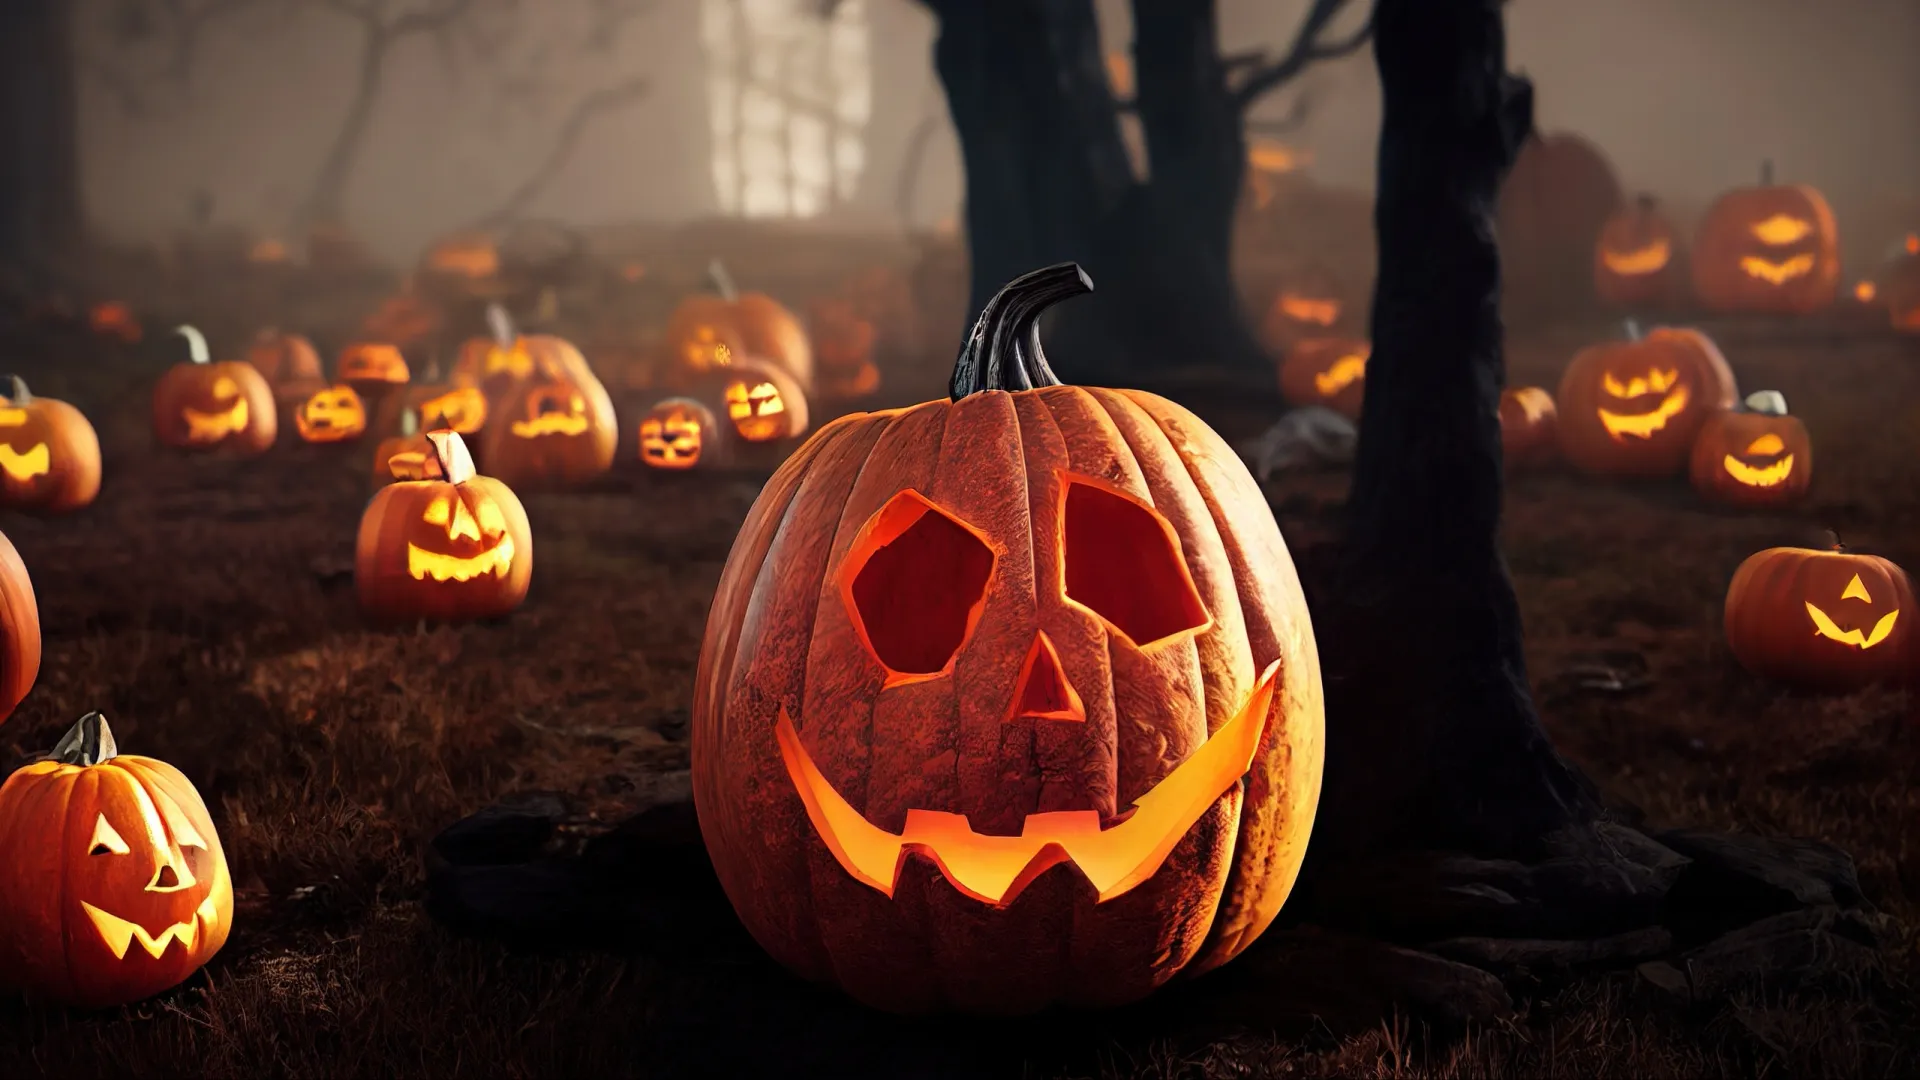 Без светильника Джека и Хэллоуин — не Хэллоуин. Фото: Declan Hillman / Shutterstock / Fotodom